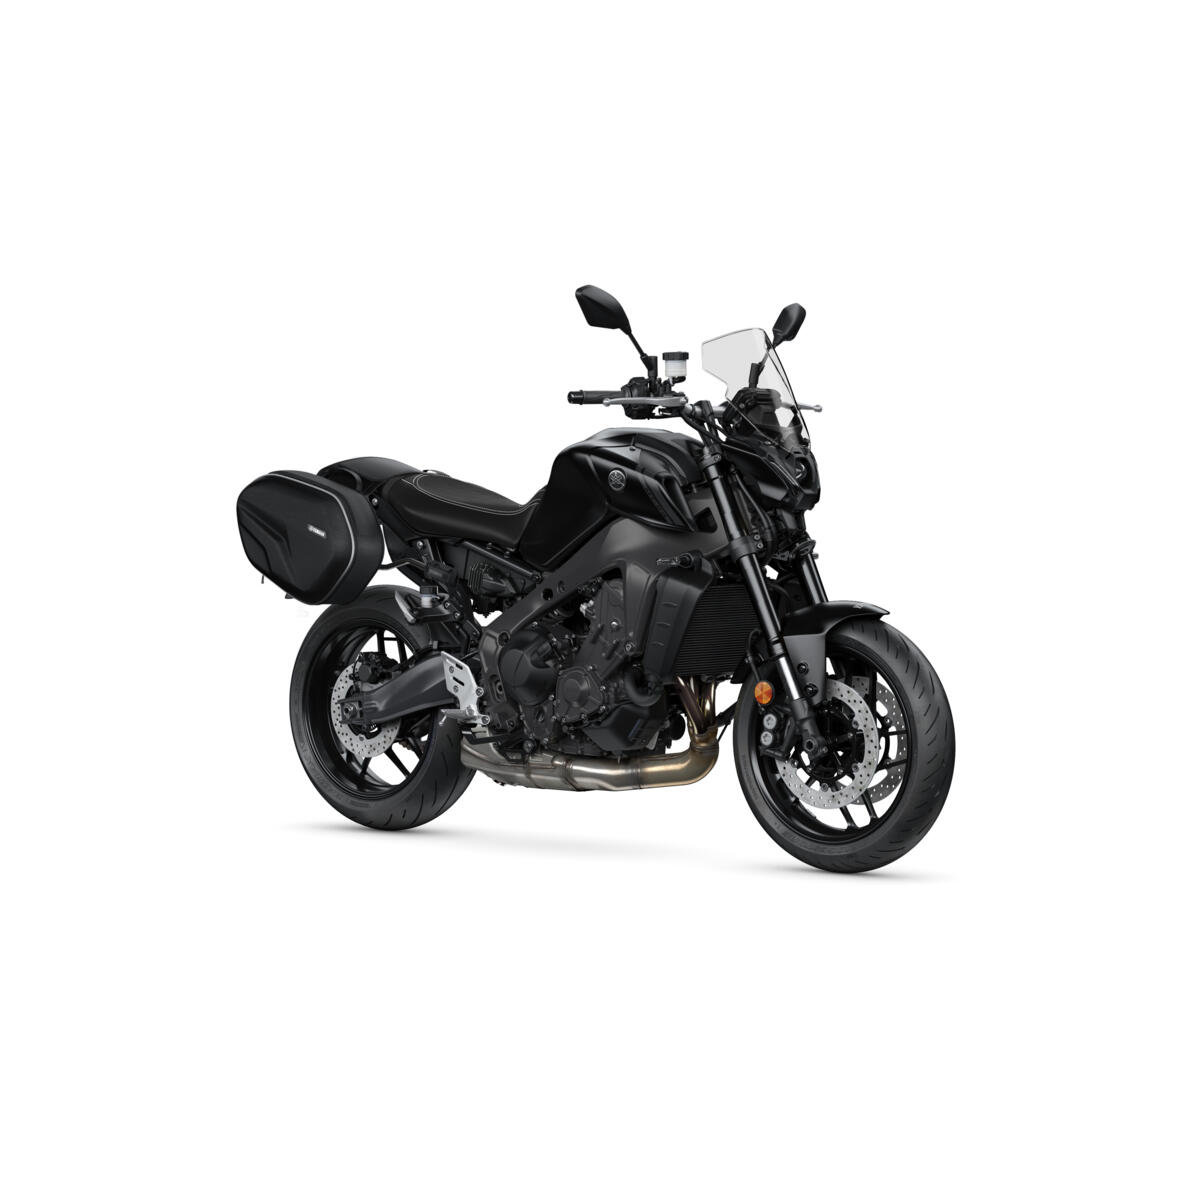 De natuurlijke rijhouding en het uitstekende brandstofbereik maken je MT-09 de perfecte motorfiets voor een weekendje weg. 
Daarom heeft Yamaha het Weekend-pakket samengesteld om ervoor te zorgen dat je van elke minuut kunt genieten, of je nu op de motorfiets zit of niet.